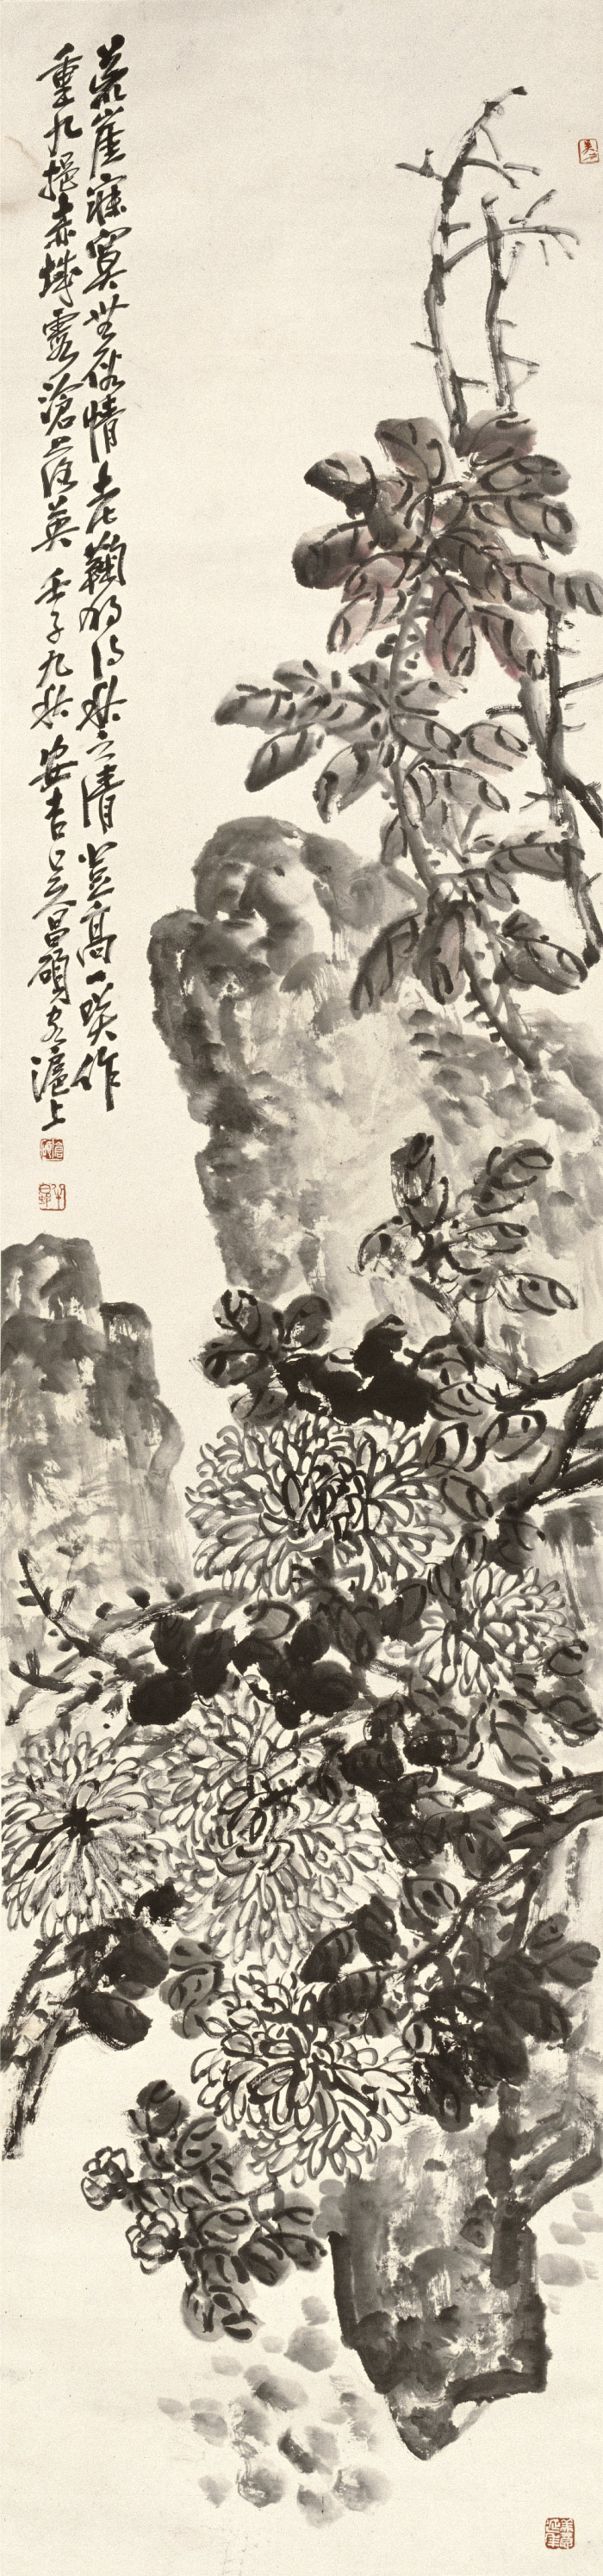 吴昌硕-《菊石图》高清作品 52-224cm